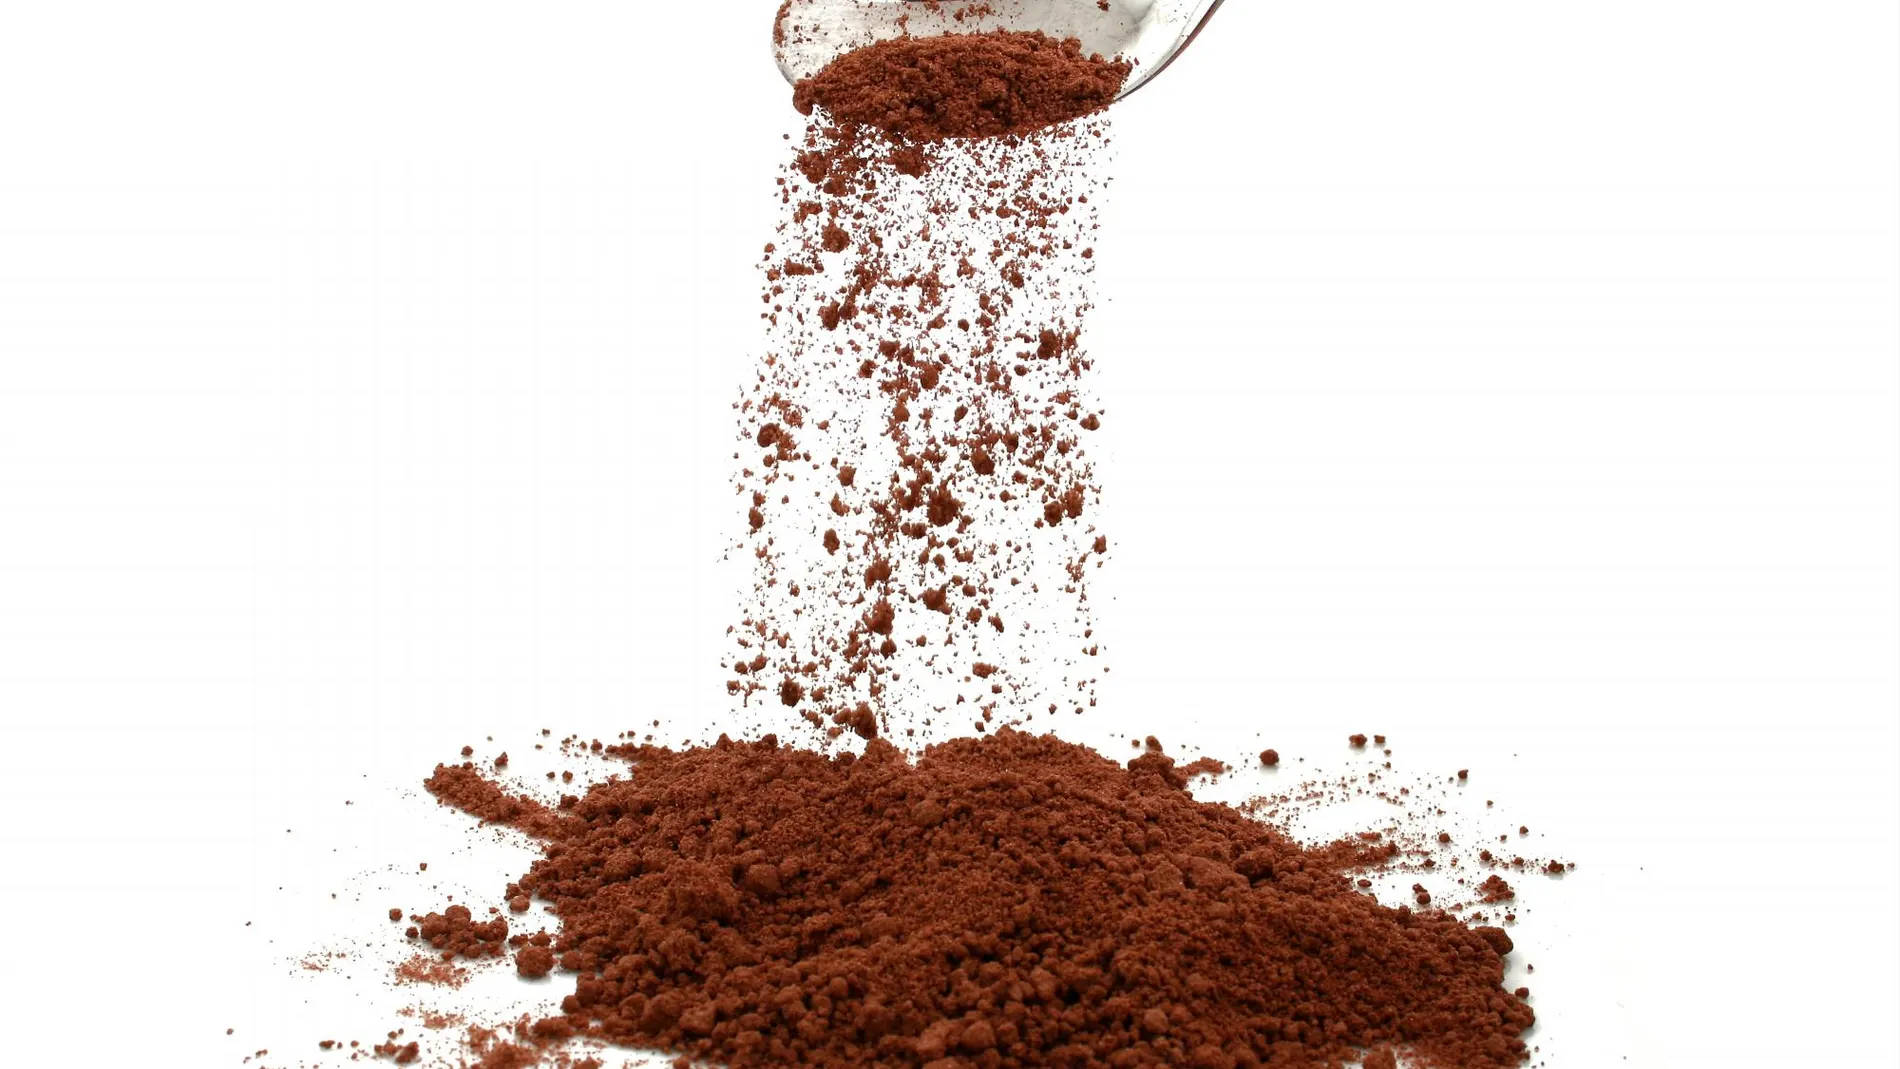 Los flavonoides le dan el color marrón al cacao | Dreamstime